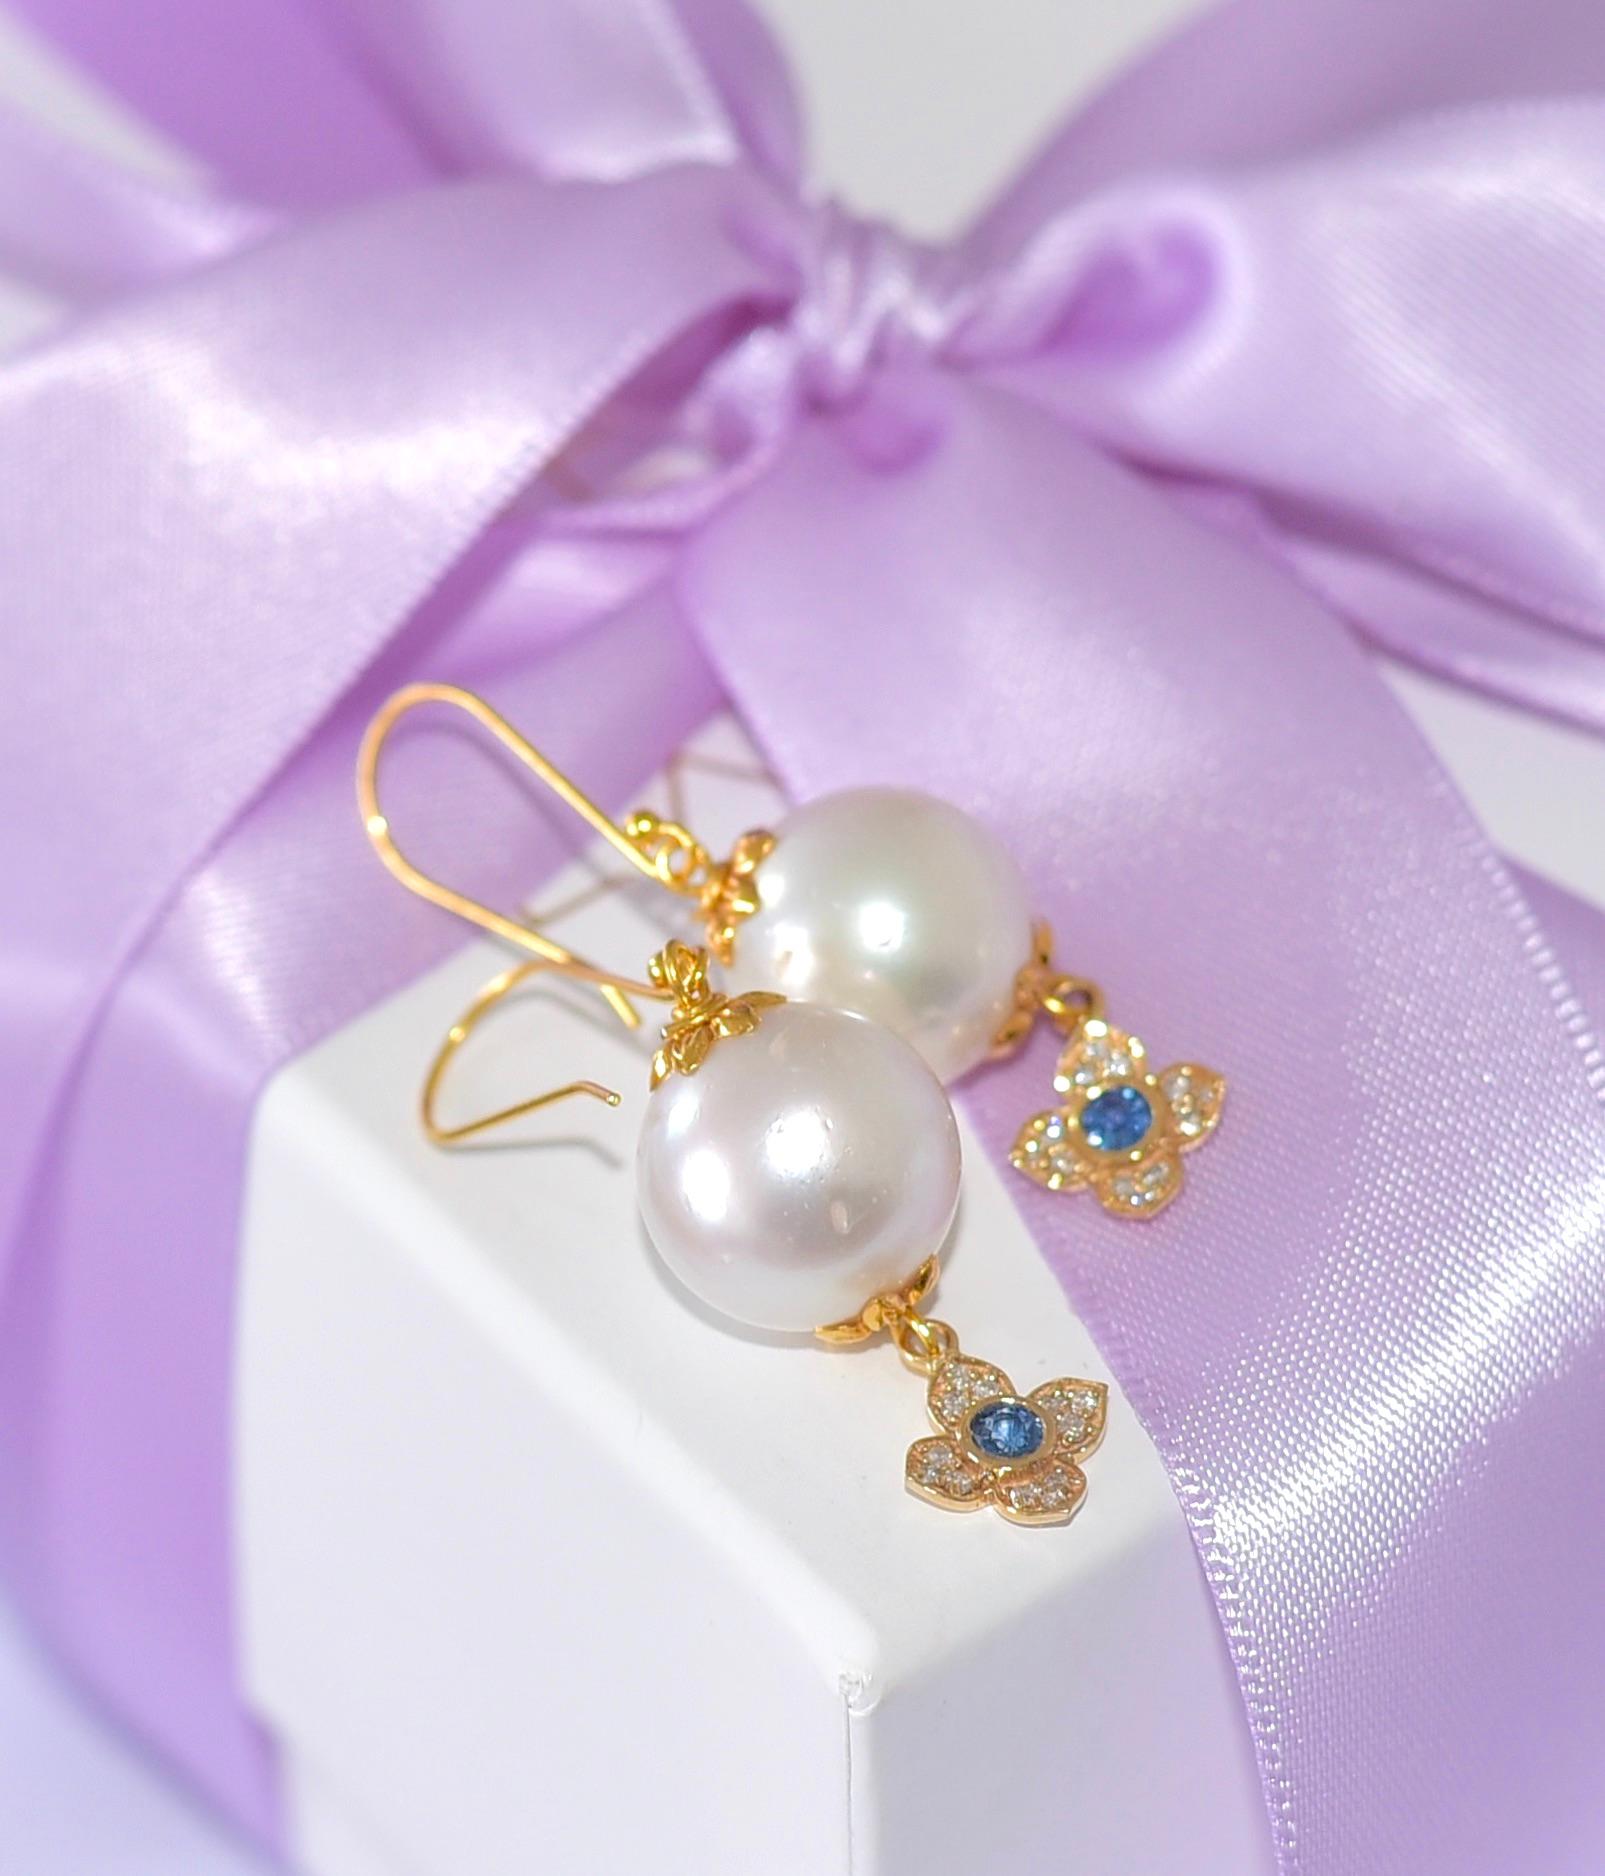 Wunderschöne, baumelnde, lebhafte, hervorragende elegante Perlenohrringe im Artisan-Stil!
Diese Ohrringe sind ein echter Hingucker! Lange, große weiße Südseeperlen ( 13,5 mm ) und eine wunderschöne Blume mit einem natürlichen blauen Saphir verleihen